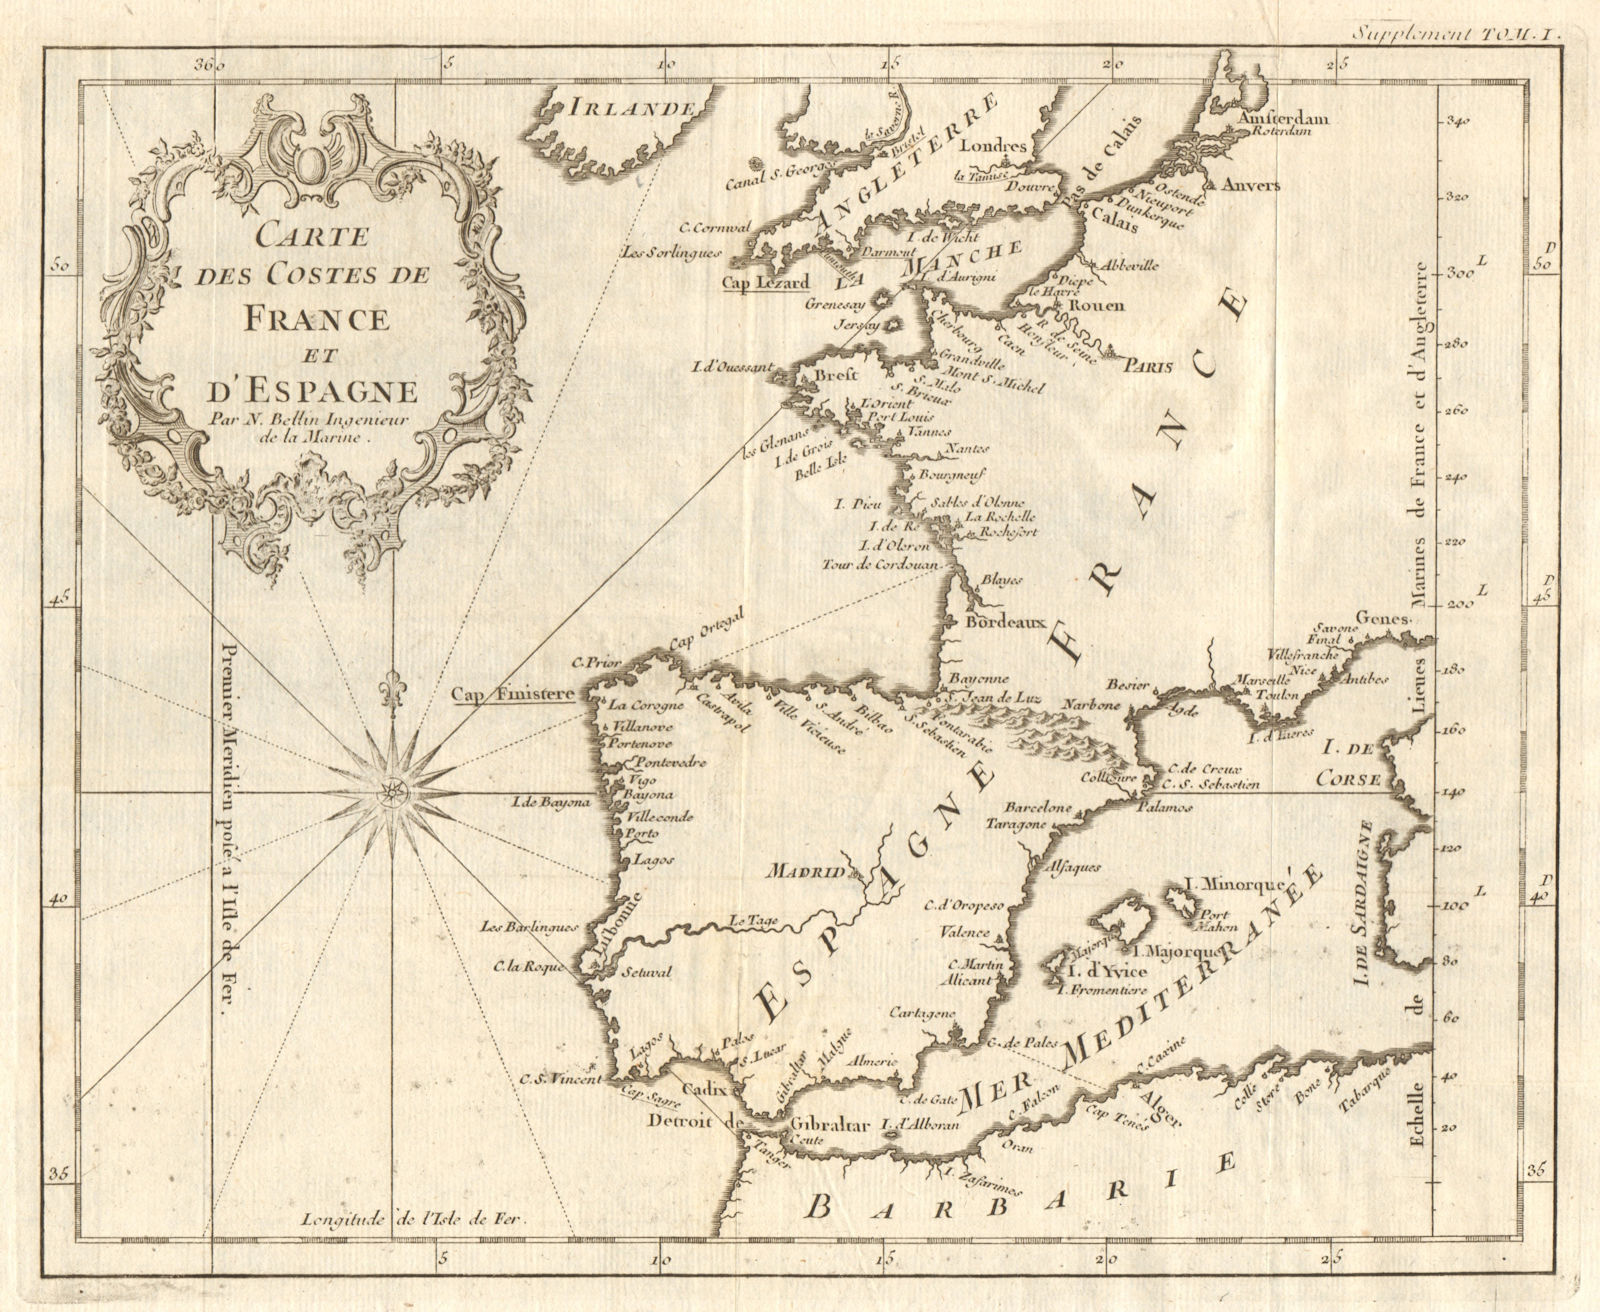 Associate Product 'Carte des Costes de France & d’Espagne'. France & Spain coasts. BELLIN 1746 map